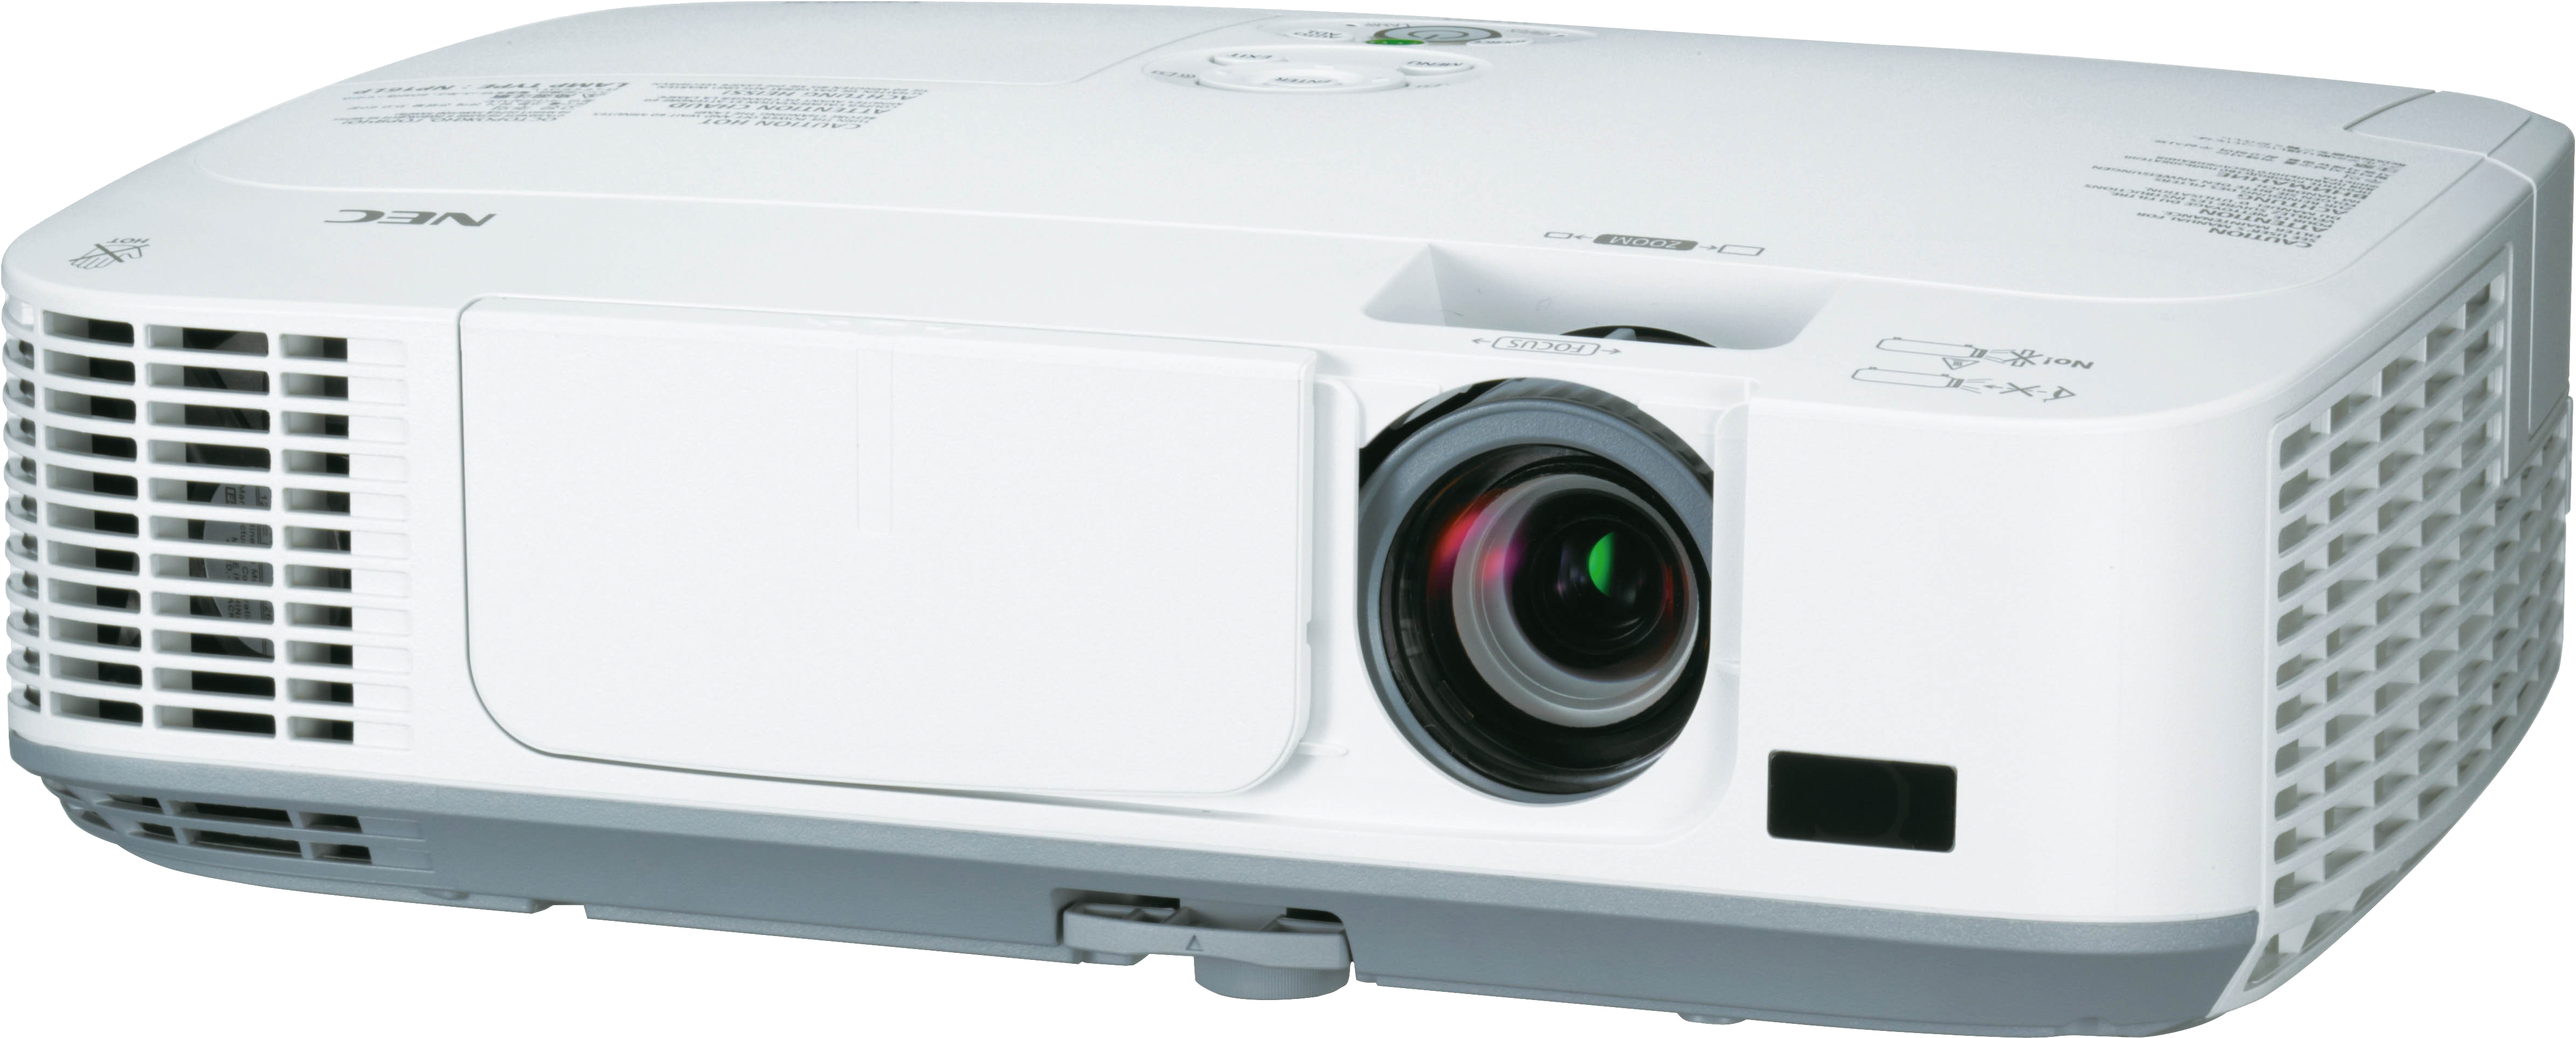 Np-m311w Projector - Panasonic Projector Pt Lb3ea Clipart (5070x2336), Png Download